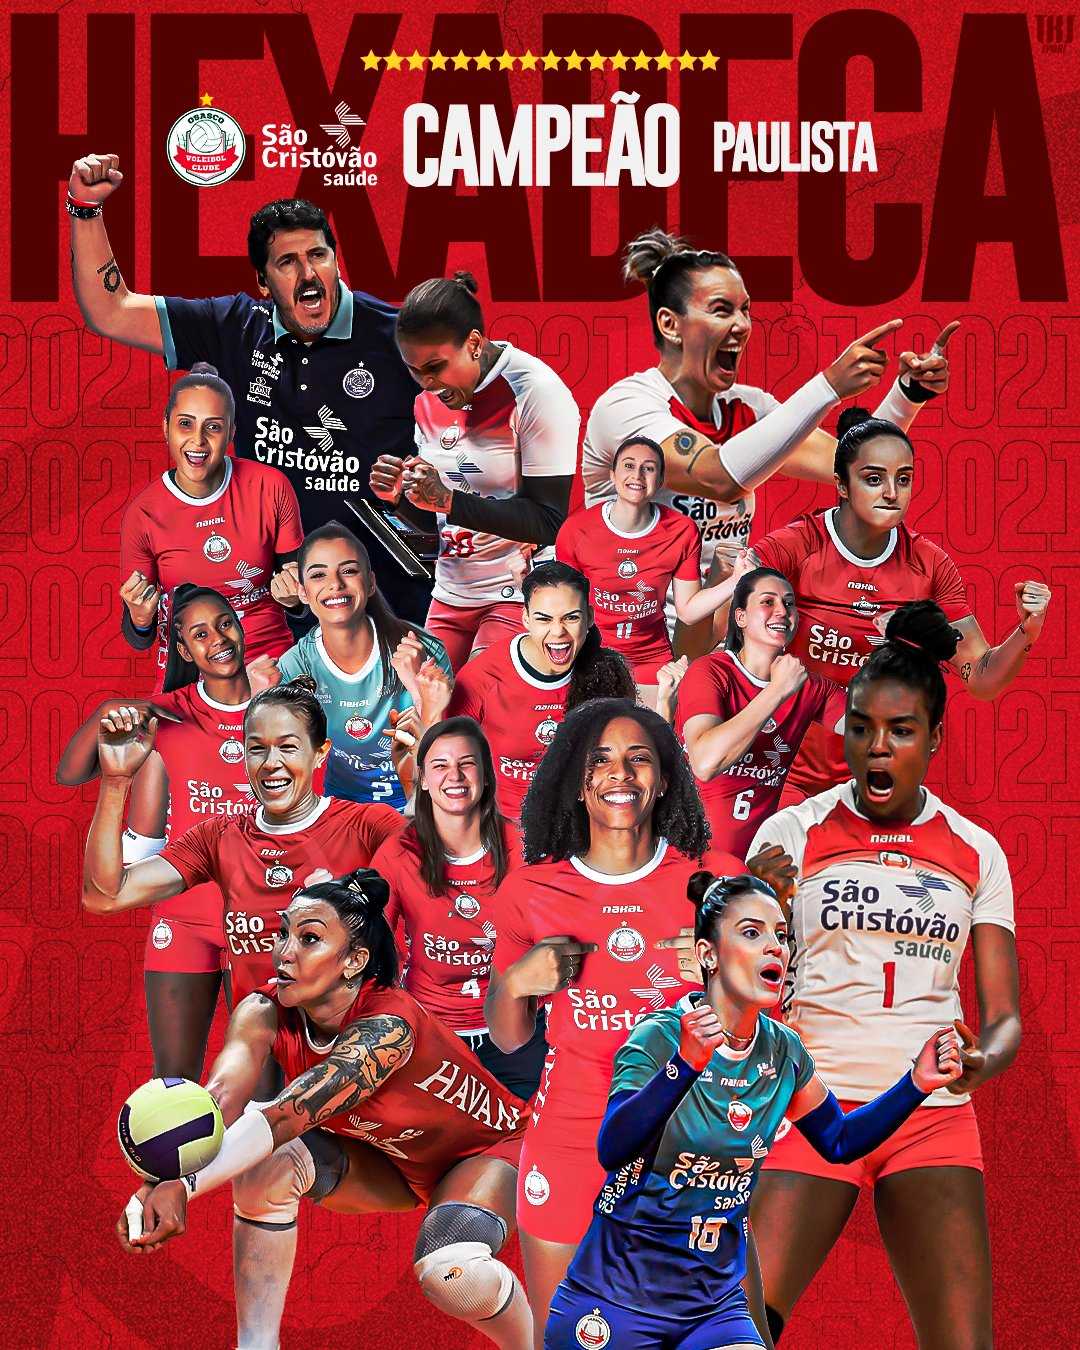 Tabela do Campeonato Paulista de vôlei feminino 2018